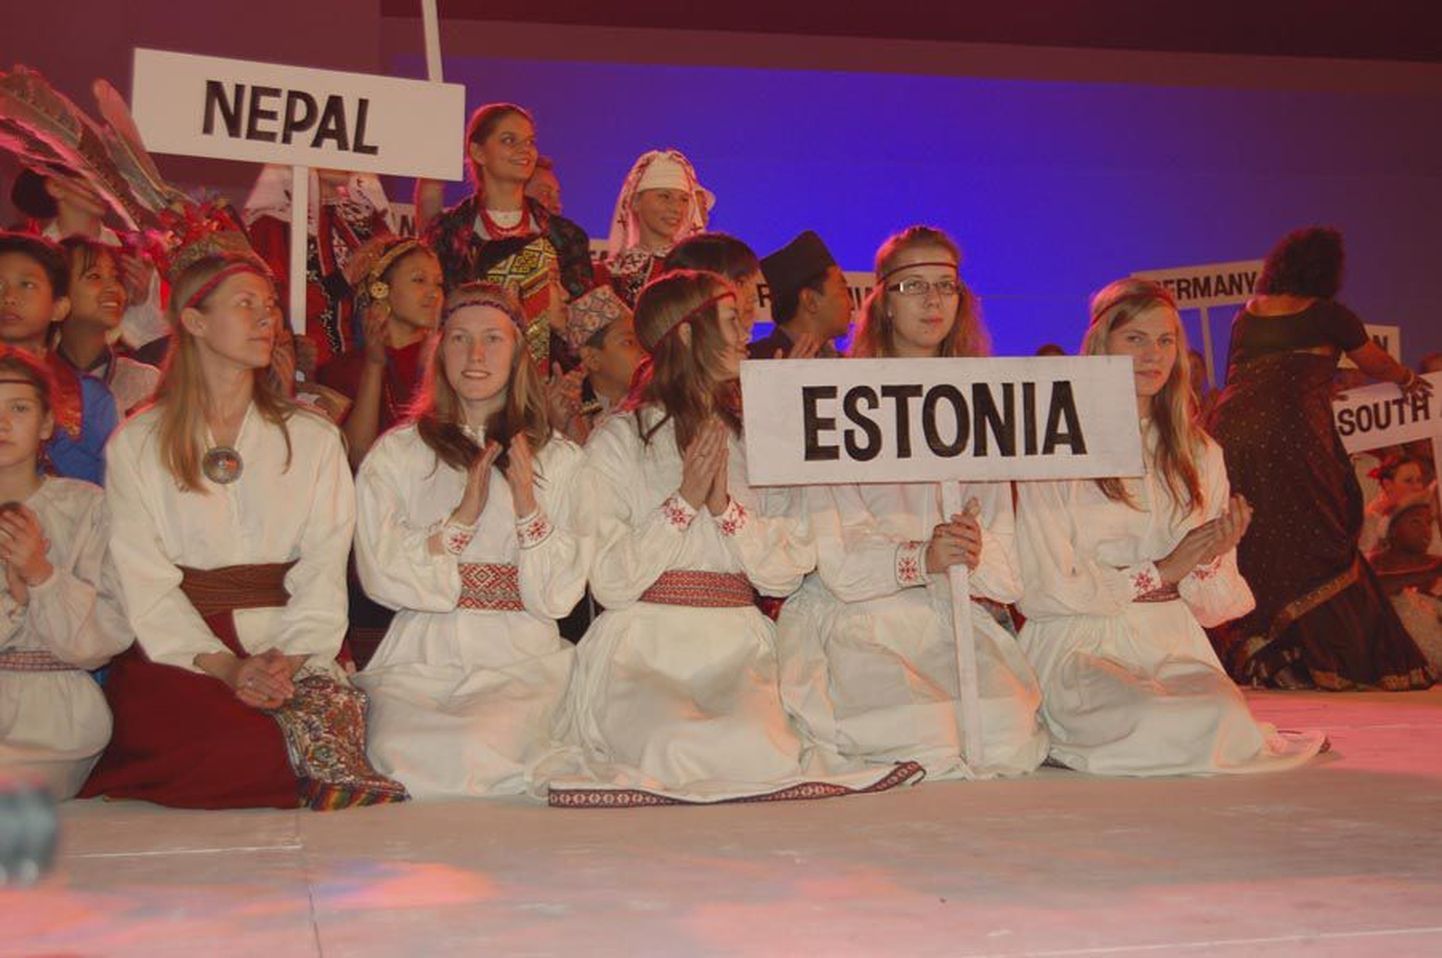 Värvikirevate esinejate hulgas äratas Eesti oma tagasihoidlike rõivaste ja vaoshoitud olekuga tähelepanu.